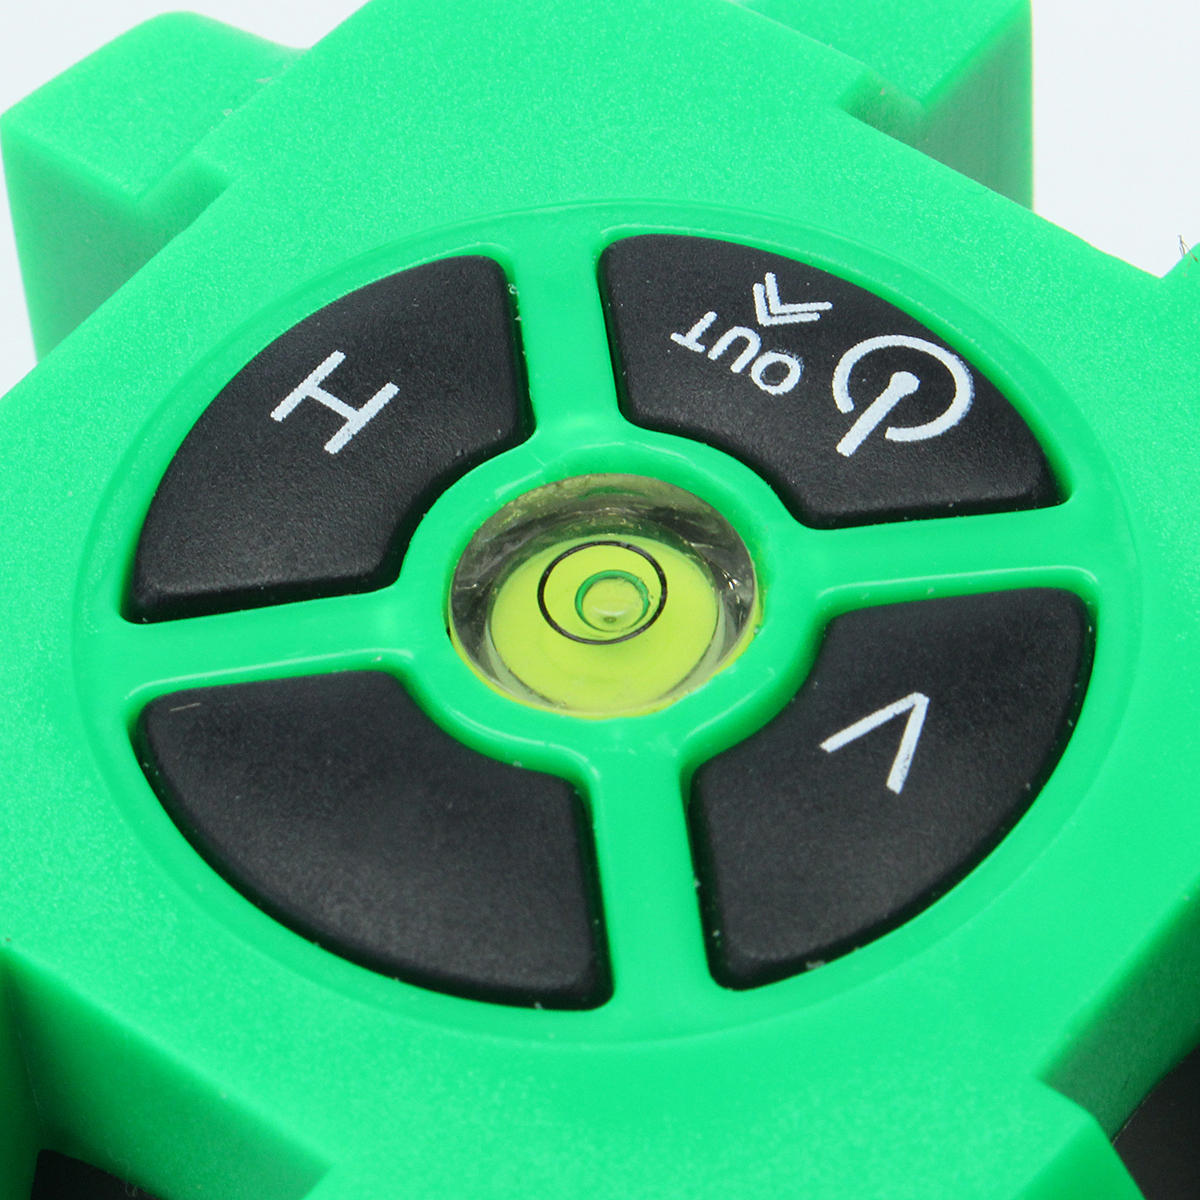 groene 3-lijns 4-punts laserniveau 360 roterende laserlijn zelfnivellerend met statief